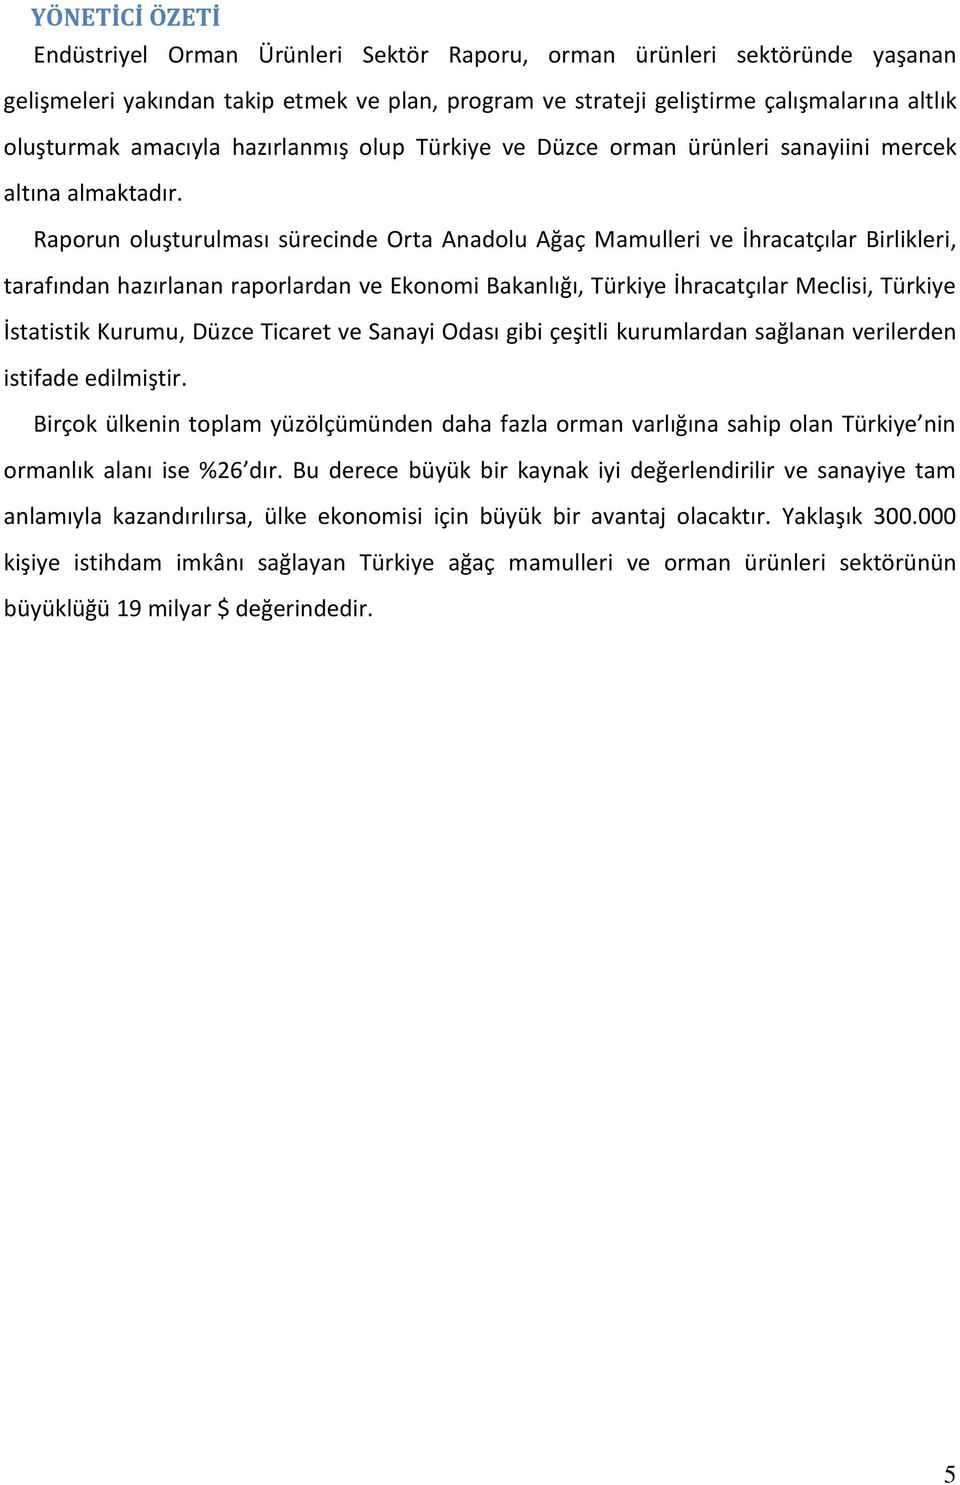 Raporun oluşturulması sürecinde Orta Anadolu Ağaç Mamulleri ve İhracatçılar Birlikleri, tarafından hazırlanan raporlardan ve Ekonomi Bakanlığı, Türkiye İhracatçılar Meclisi, Türkiye İstatistik